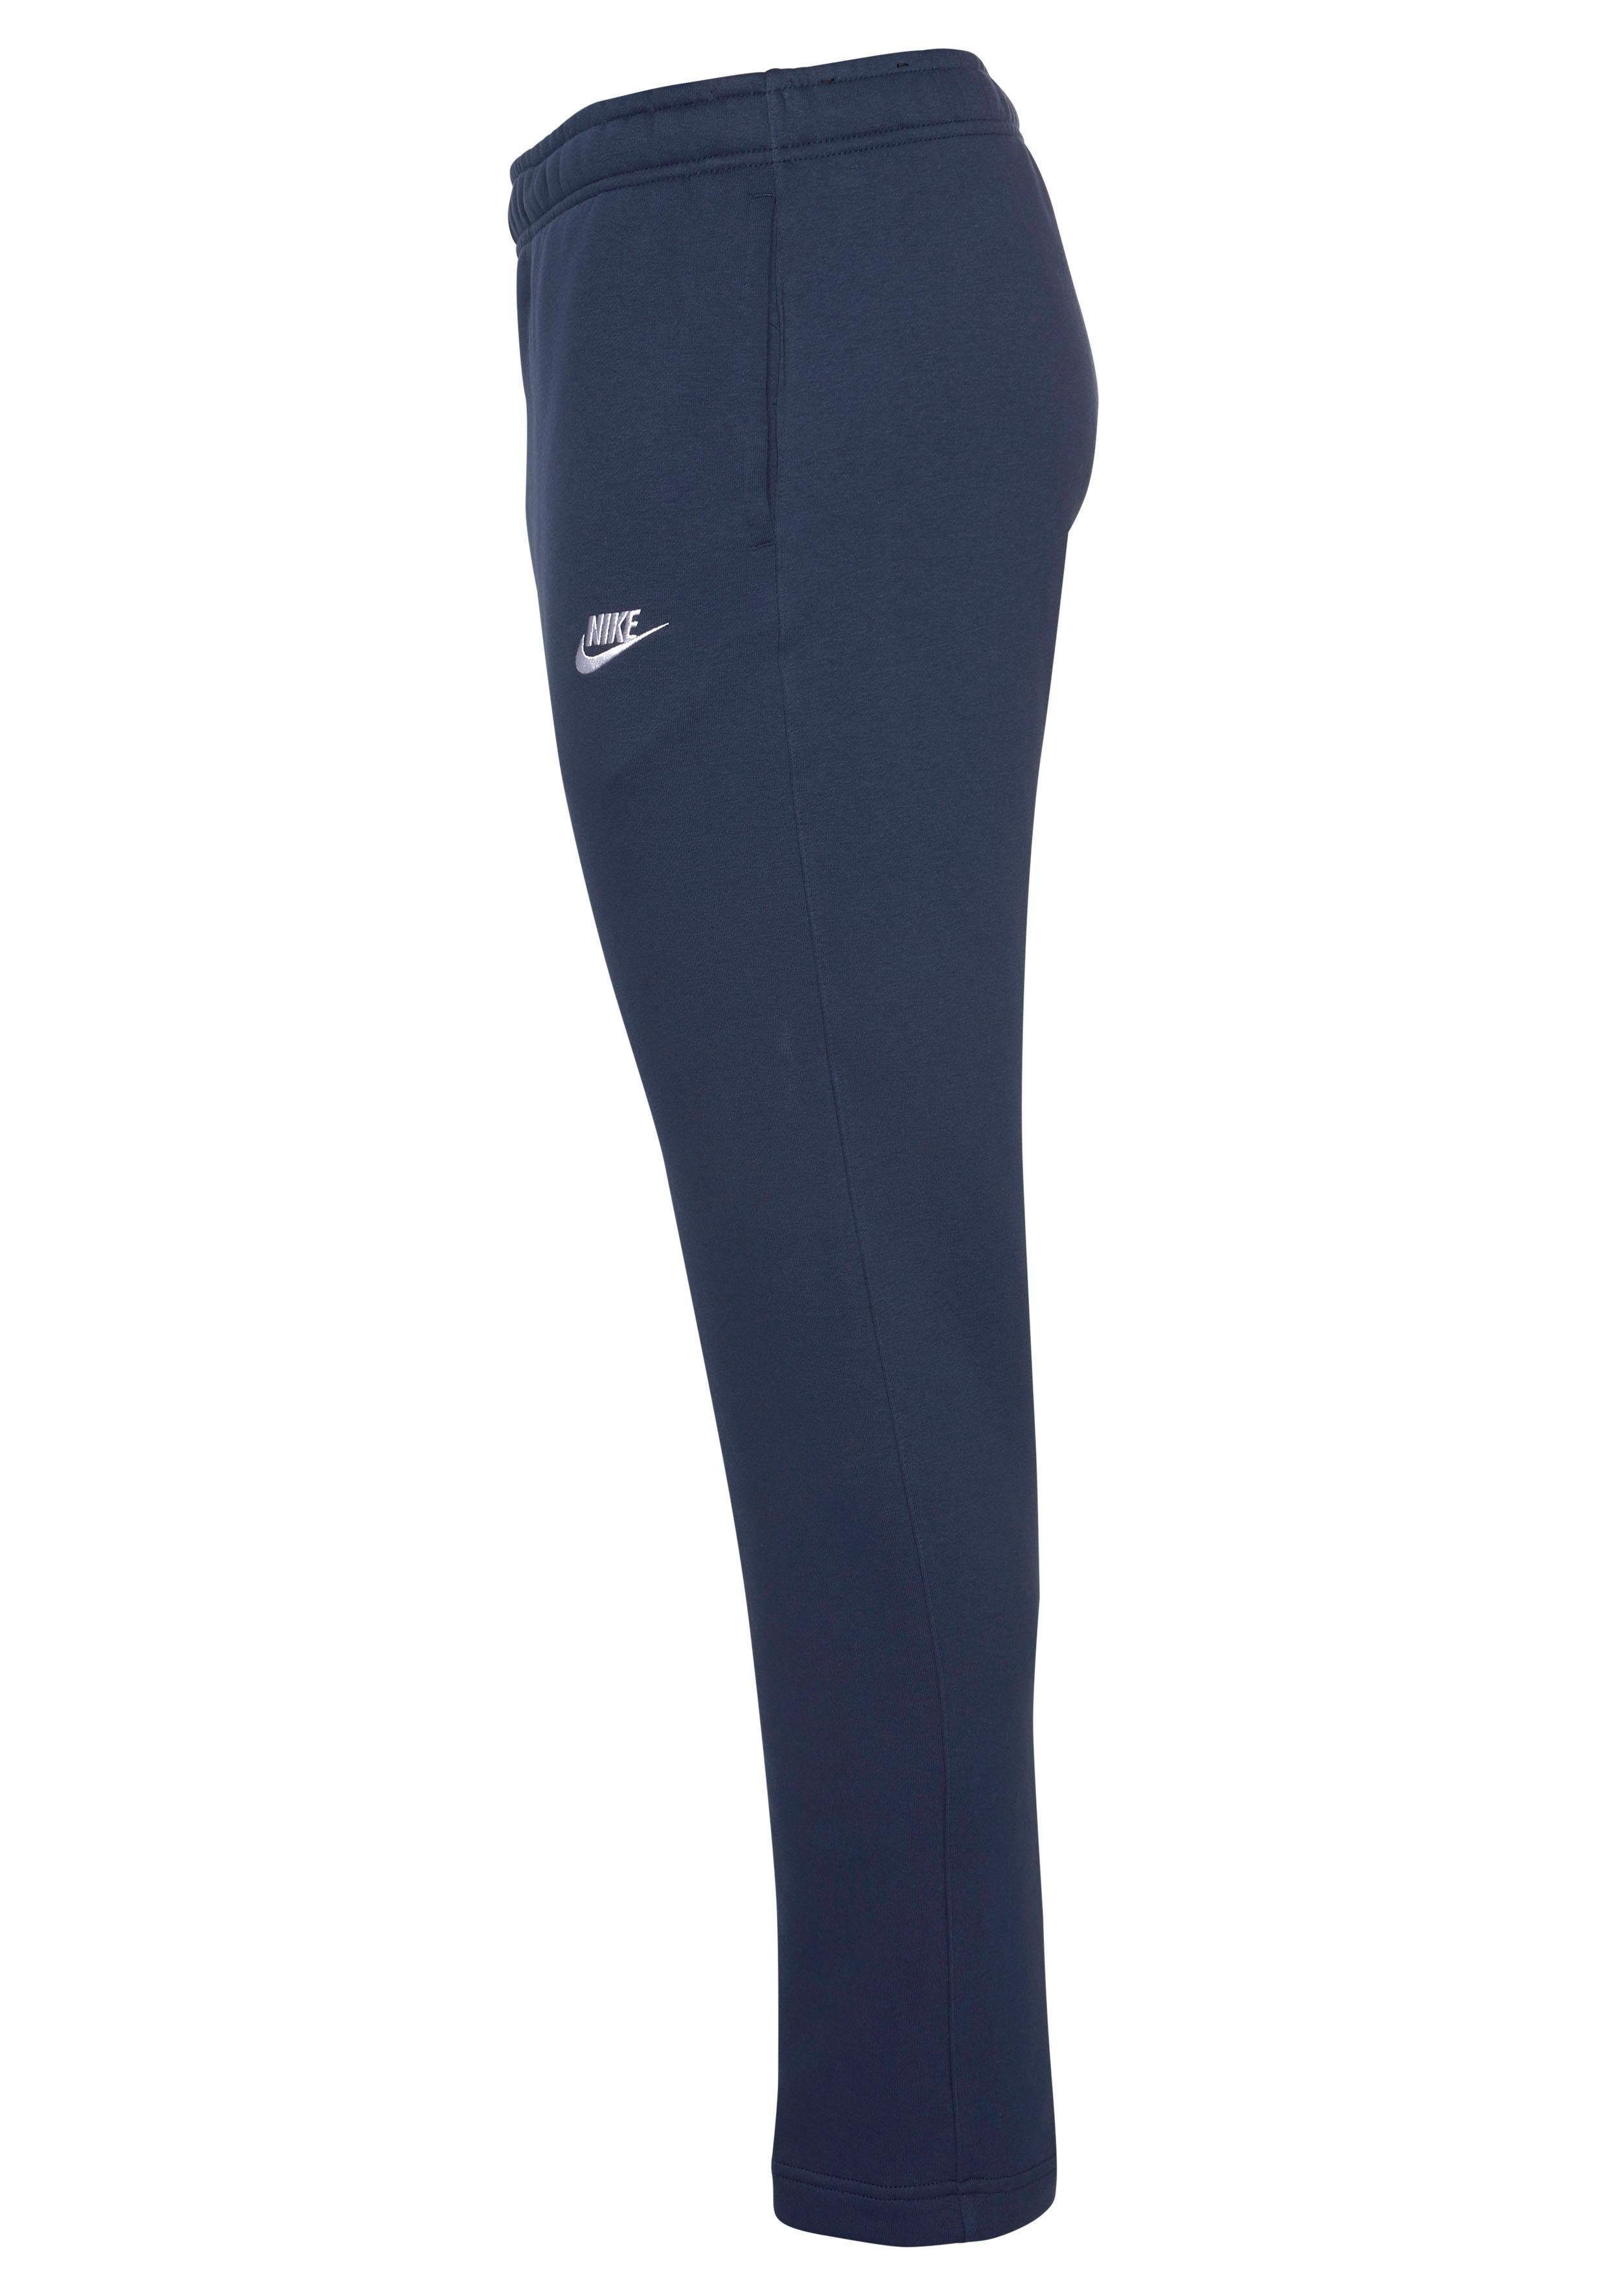 Fleece marine Nike Jogginghose Sportswear Pants Club Men's